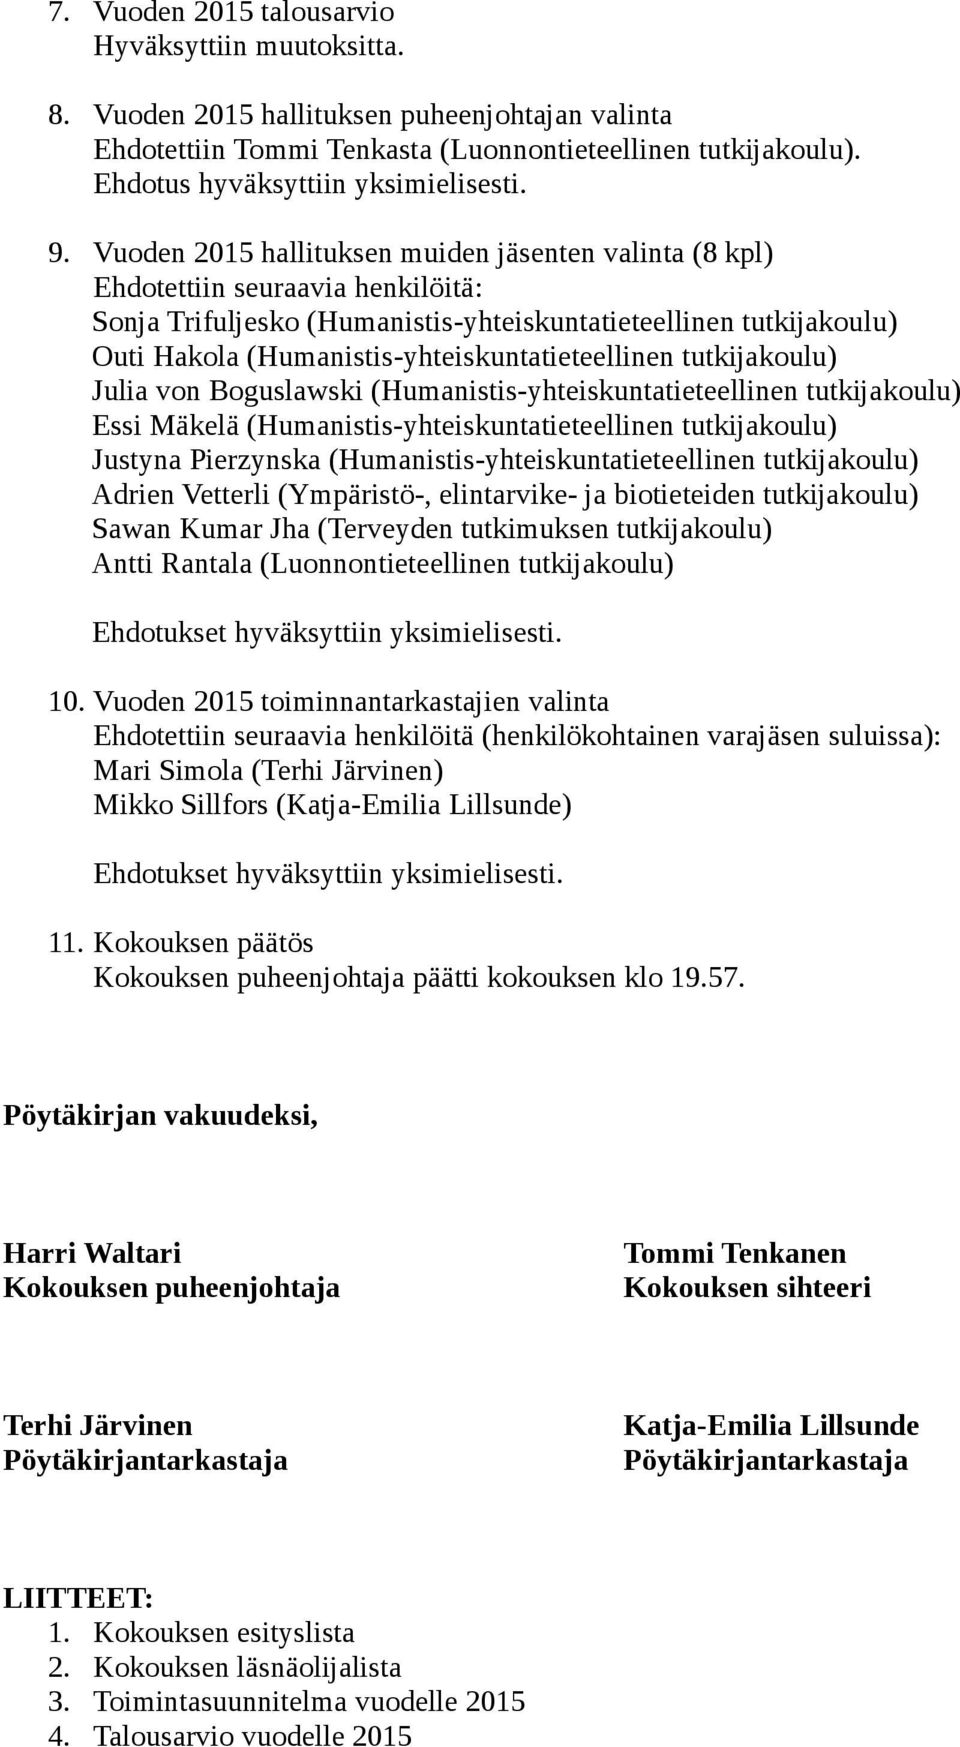 Vuoden 2015 hallituksen muiden jäsenten valinta (8 kpl) Ehdotettiin seuraavia henkilöitä: Sonja Trifuljesko (Humanistis-yhteiskuntatieteellinen tutkijakoulu) Outi Hakola